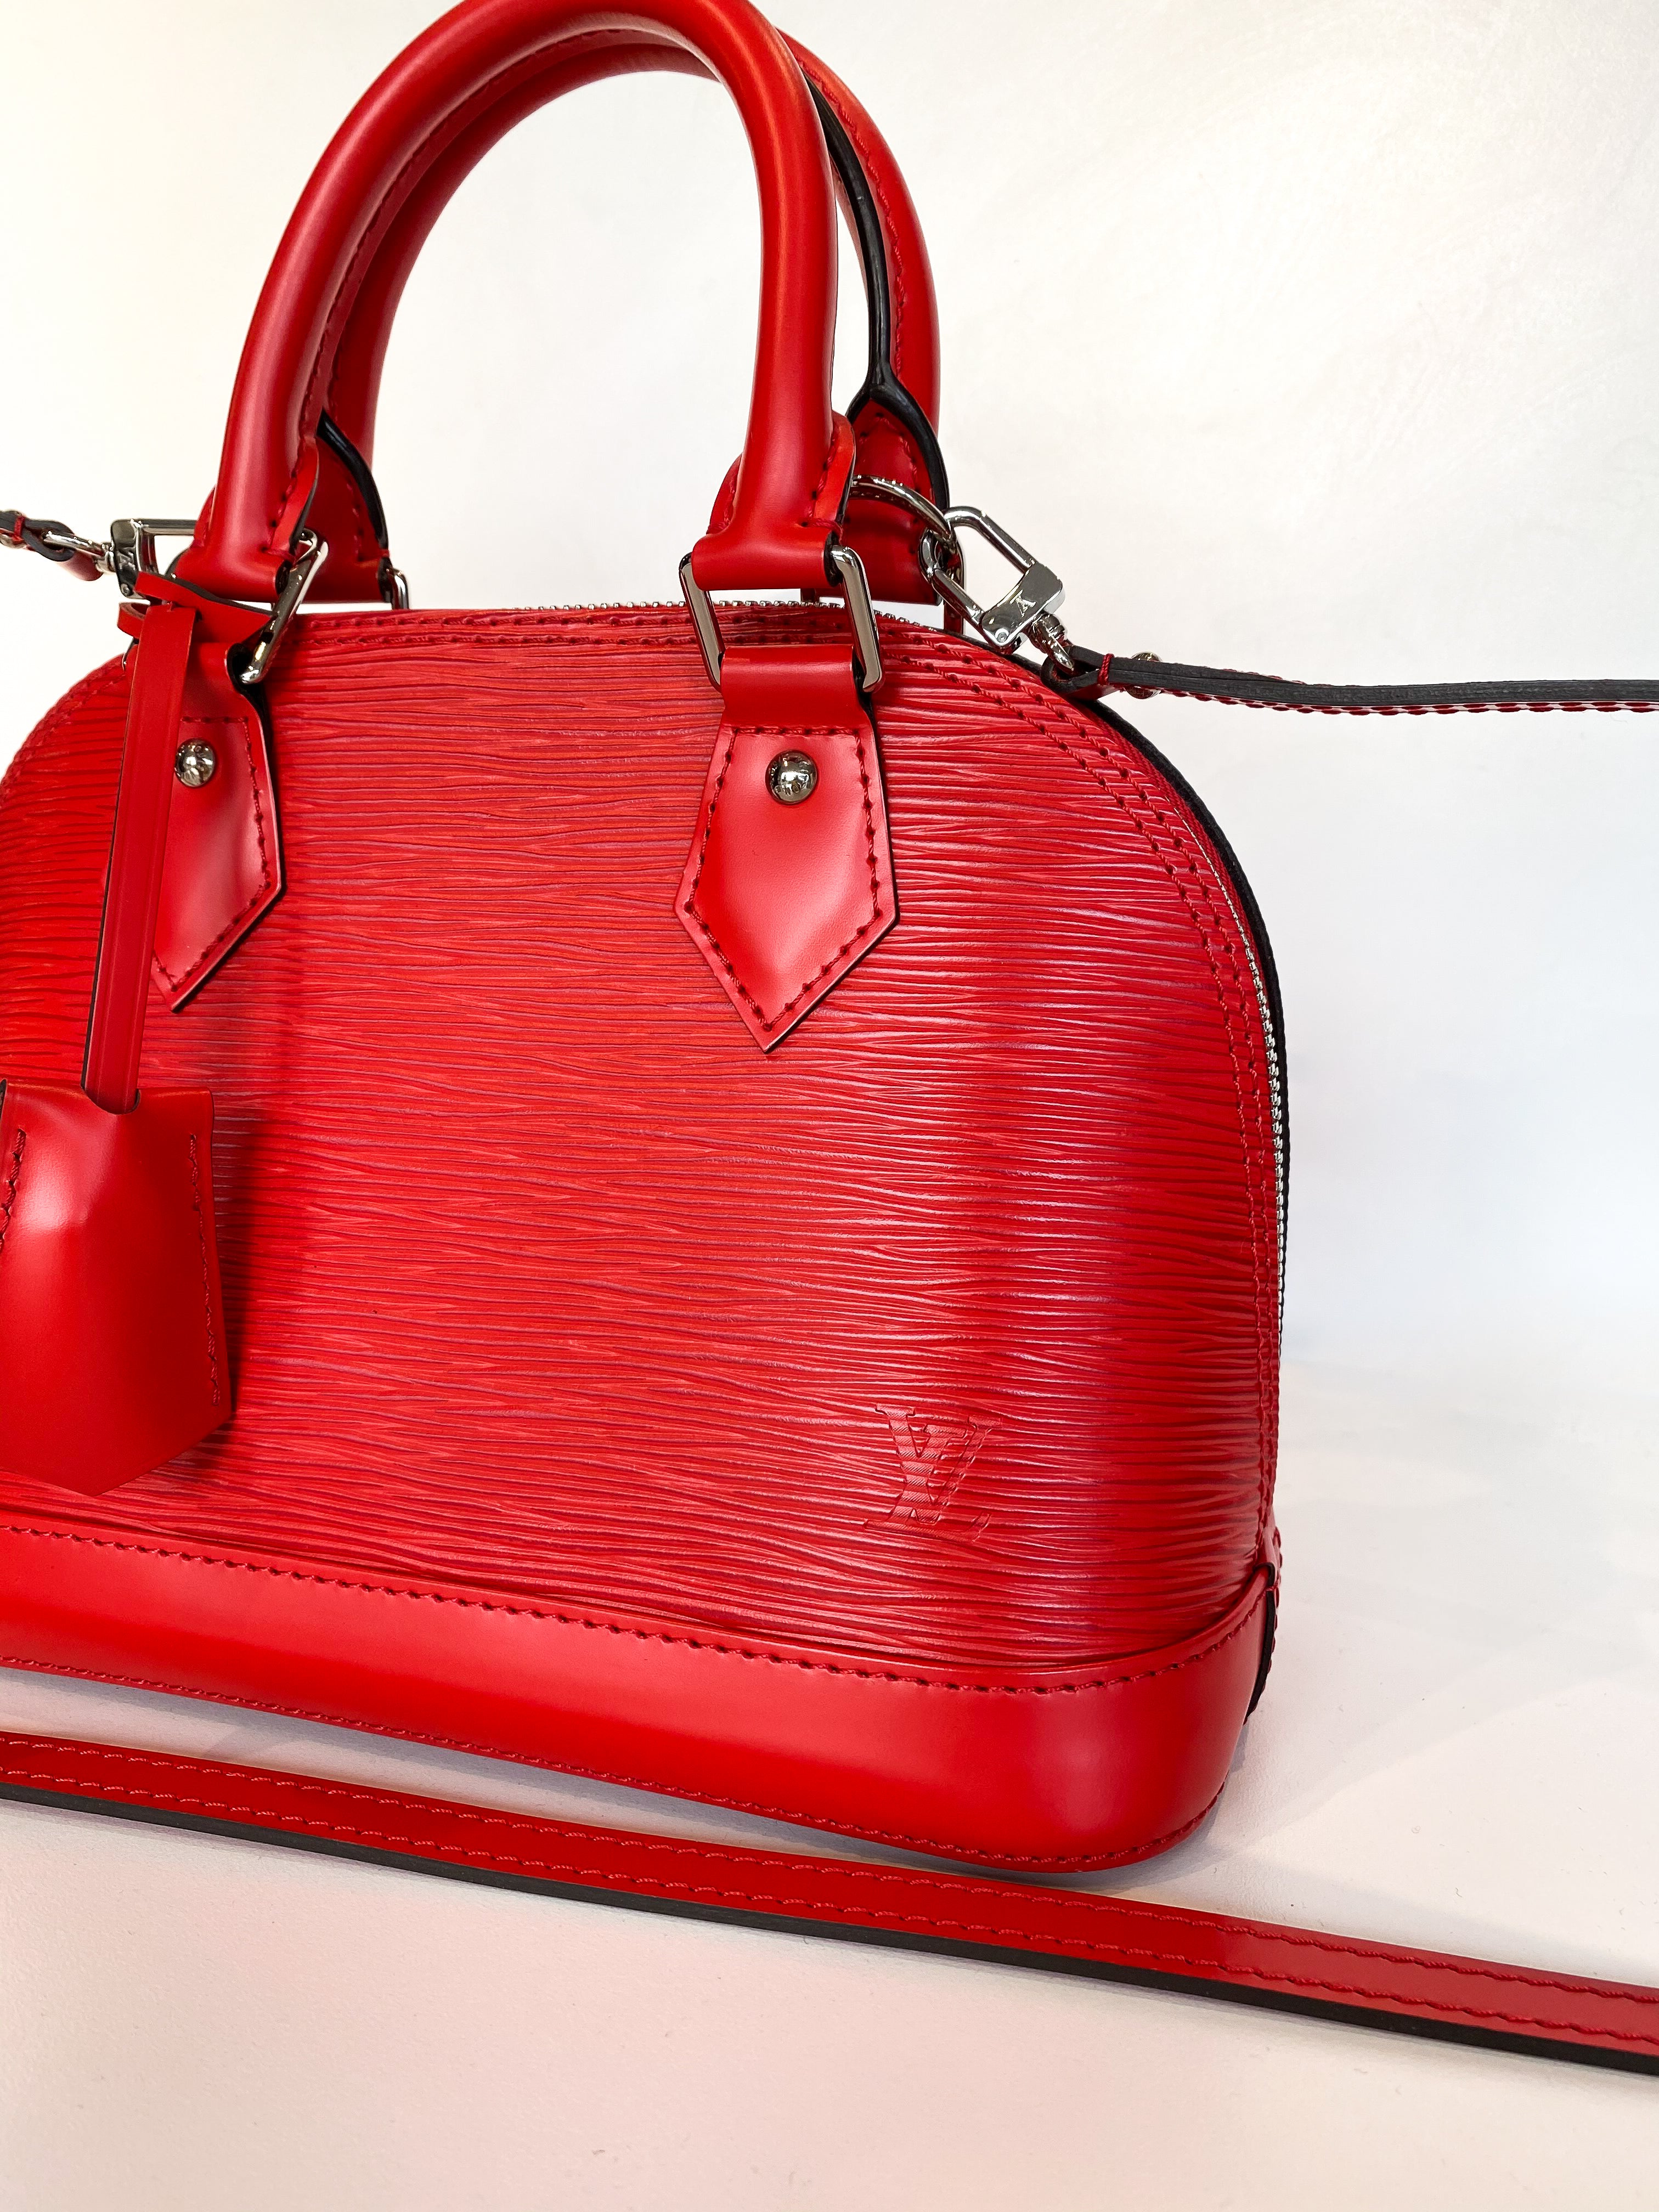 Louis Vuitton Alma BB Top Handle Bag in Epi Leather Neutrals | 3D model